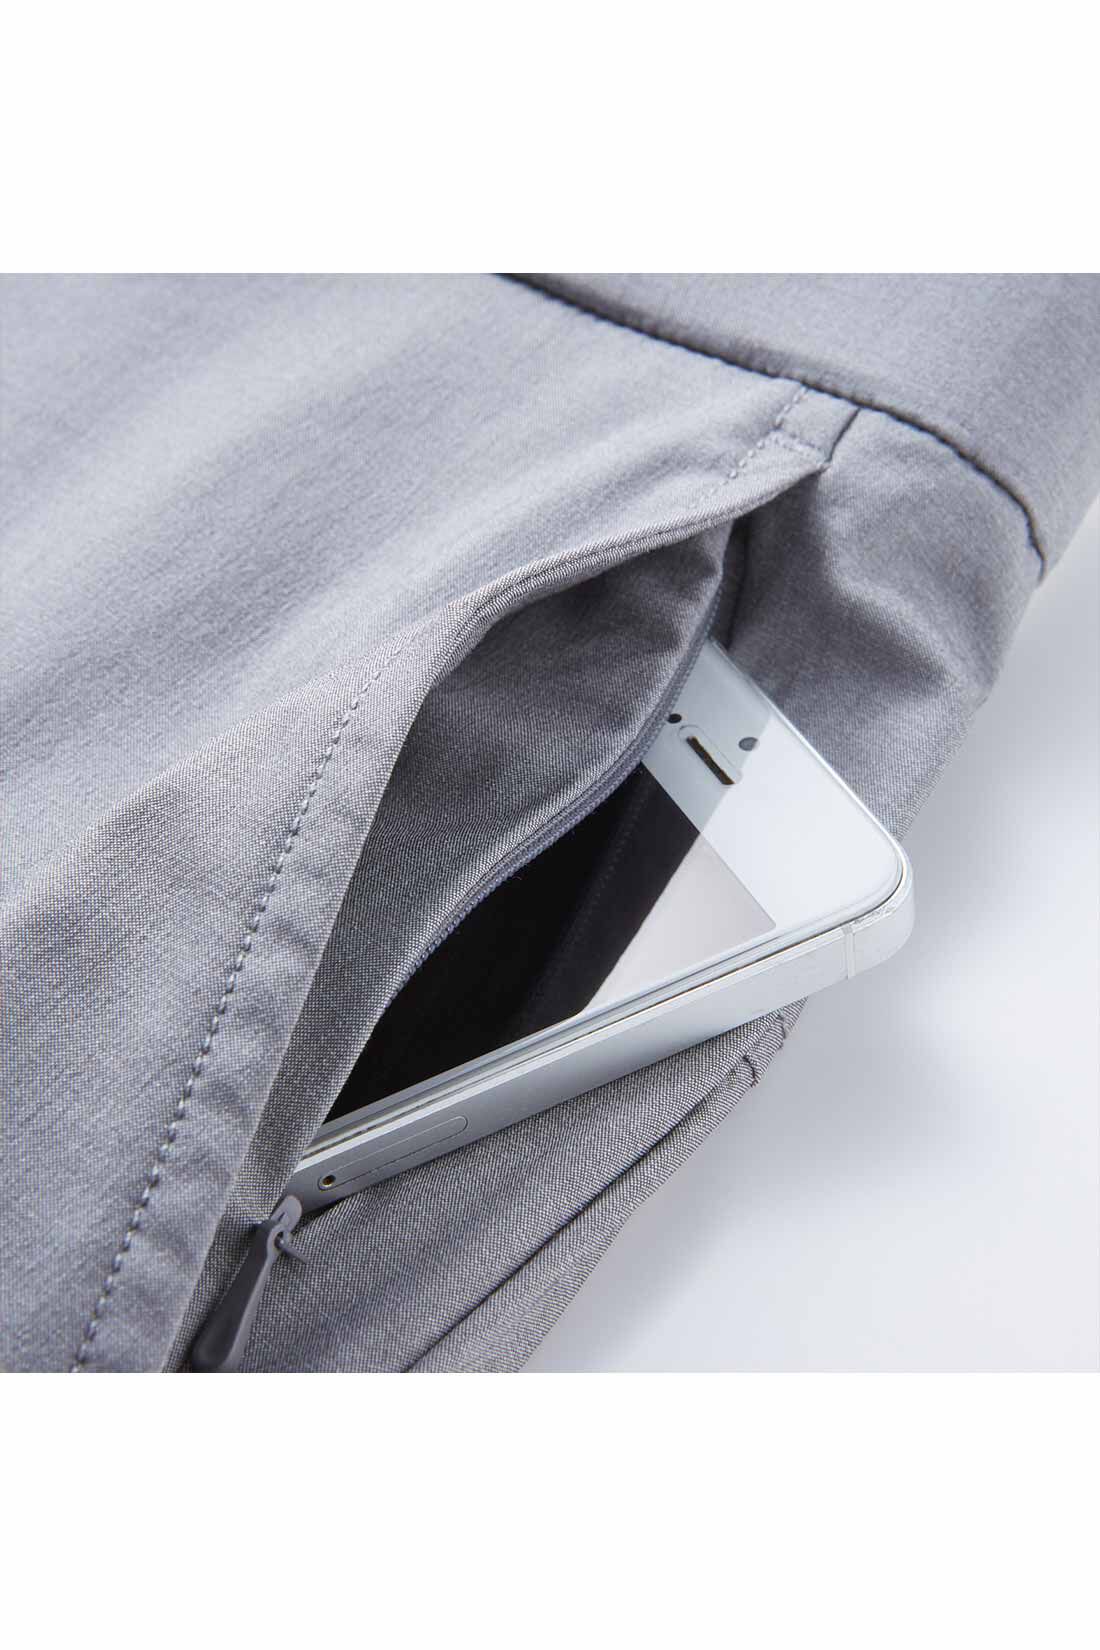 IEDIT|IEDIT[イディット]　UVカット・吸汗速乾・接触冷感がうれしい エアノビライト涼やかメンズテーパードパンツ〈グレー〉|左わきのポケットはダブルポケット仕様。落下防止のコンシールファスナー付き。